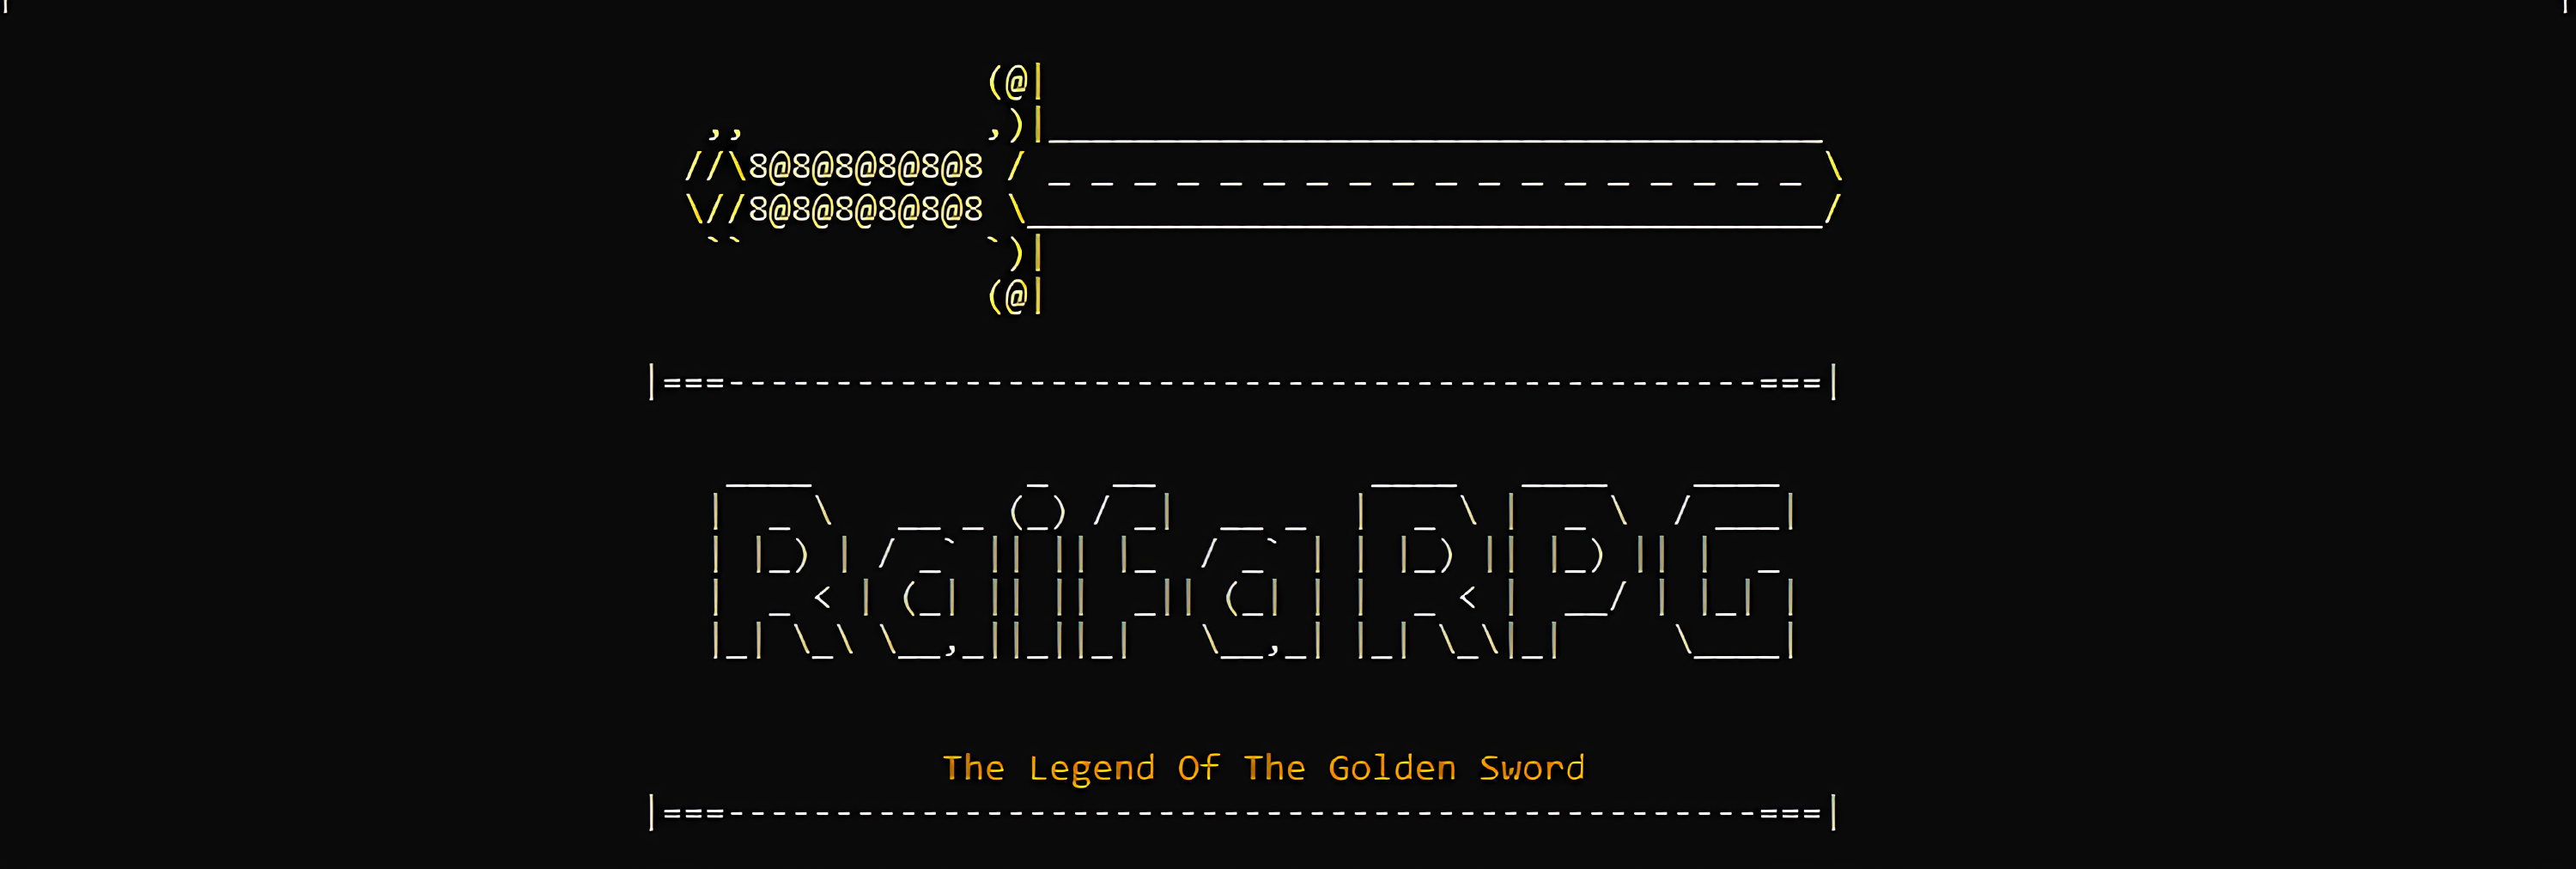 RaifaRPG: The Legend Of The Golden Sword